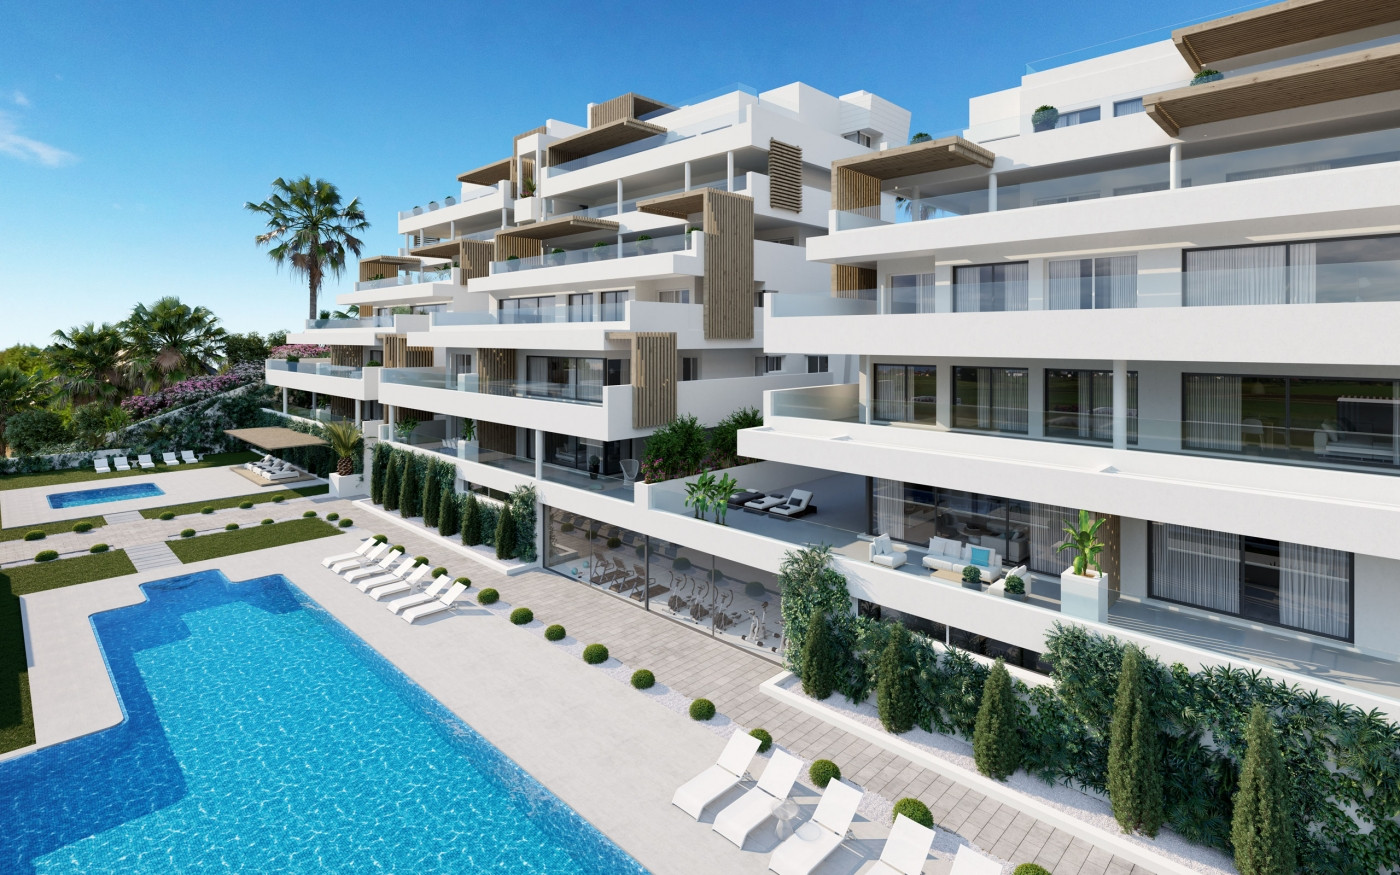 Appartementen en penthouses met fantastisch zeezicht en alles op loopafstand in Estepona.PL141 1e fase uitverkocht!